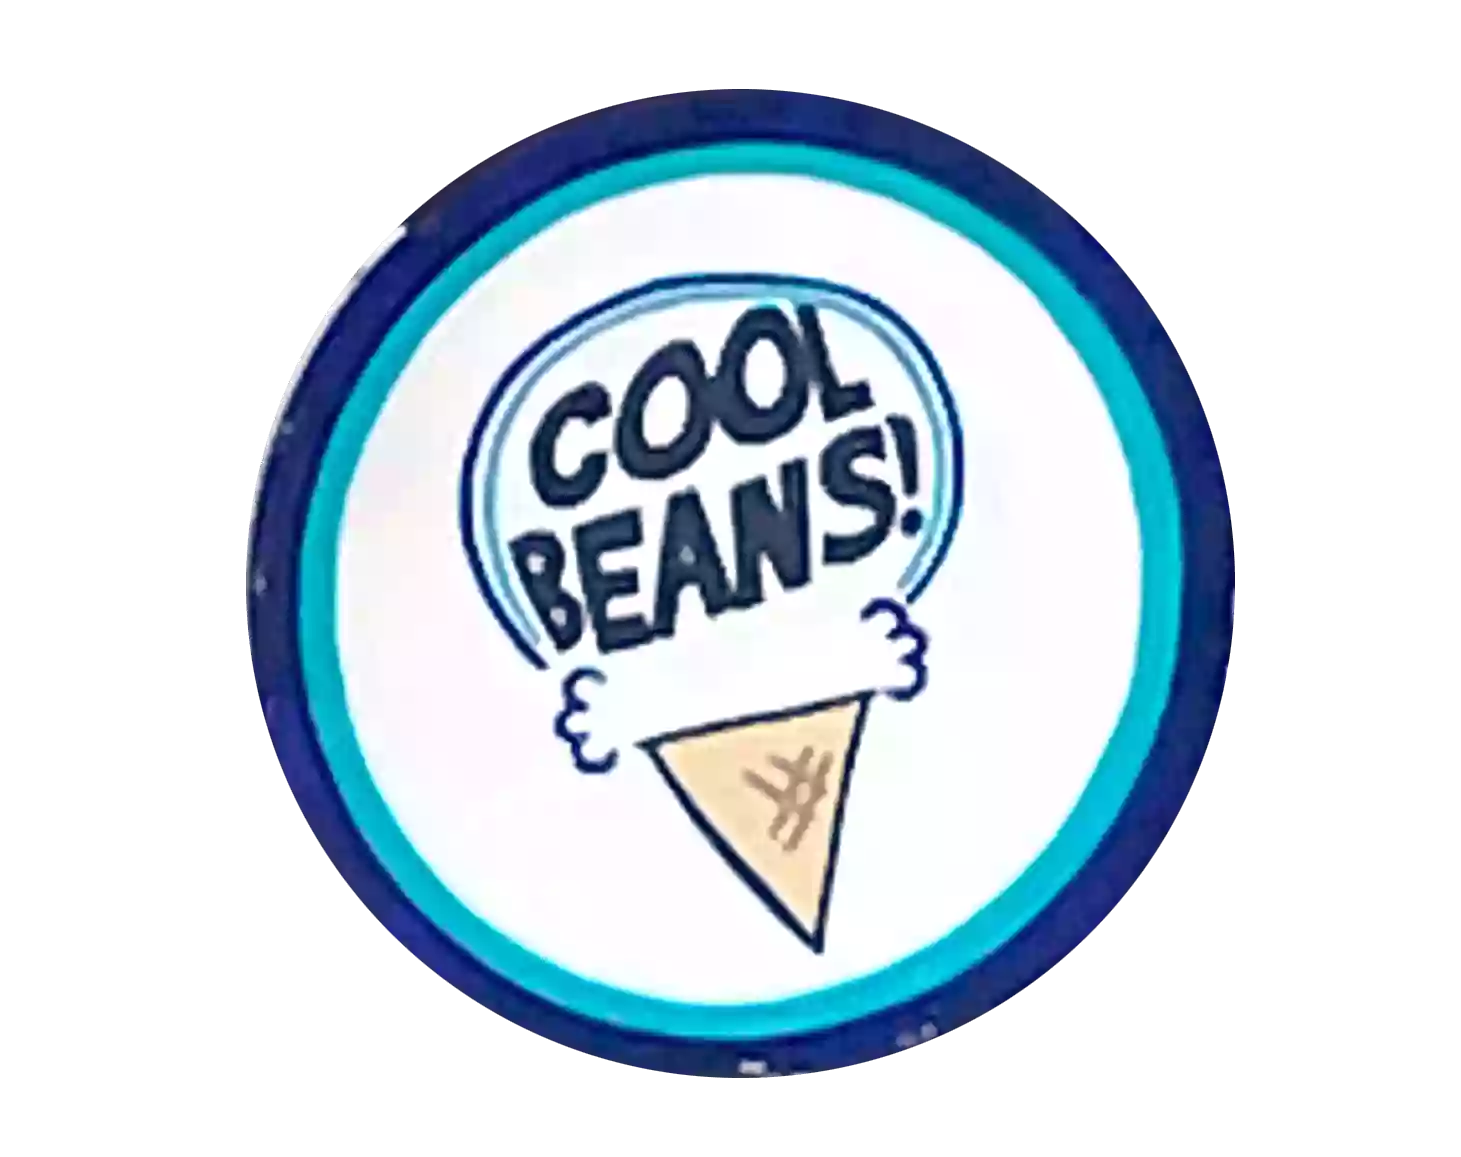 Cool Beans Creamery & Deli